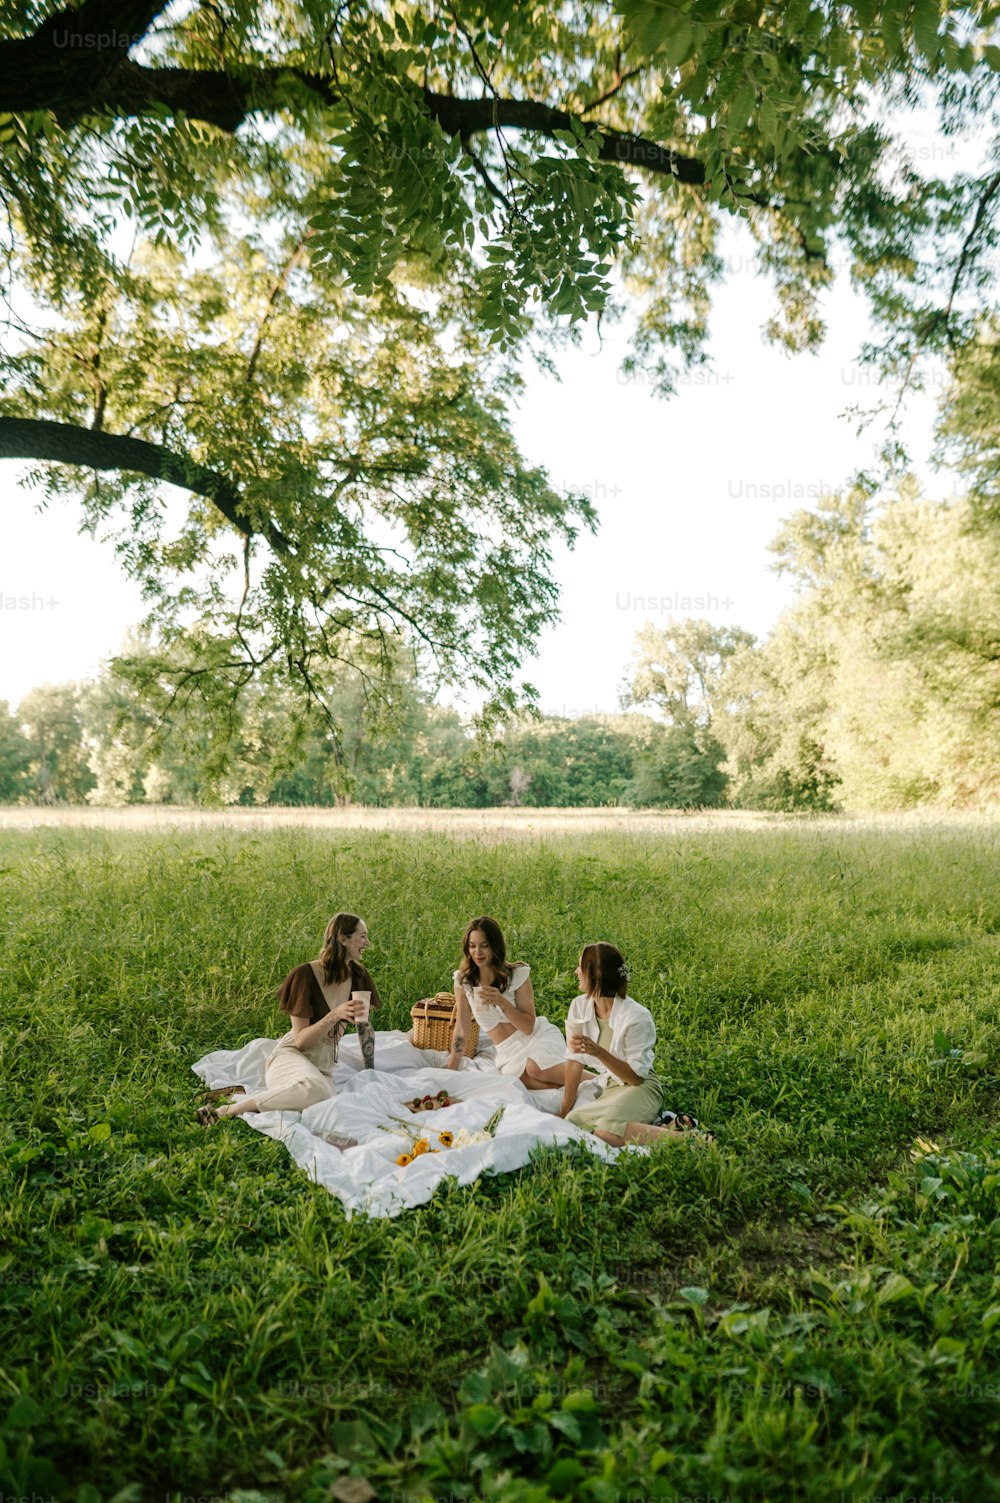 무성한 녹색 들판 위에 앉아 있는 한 무리의 여성들